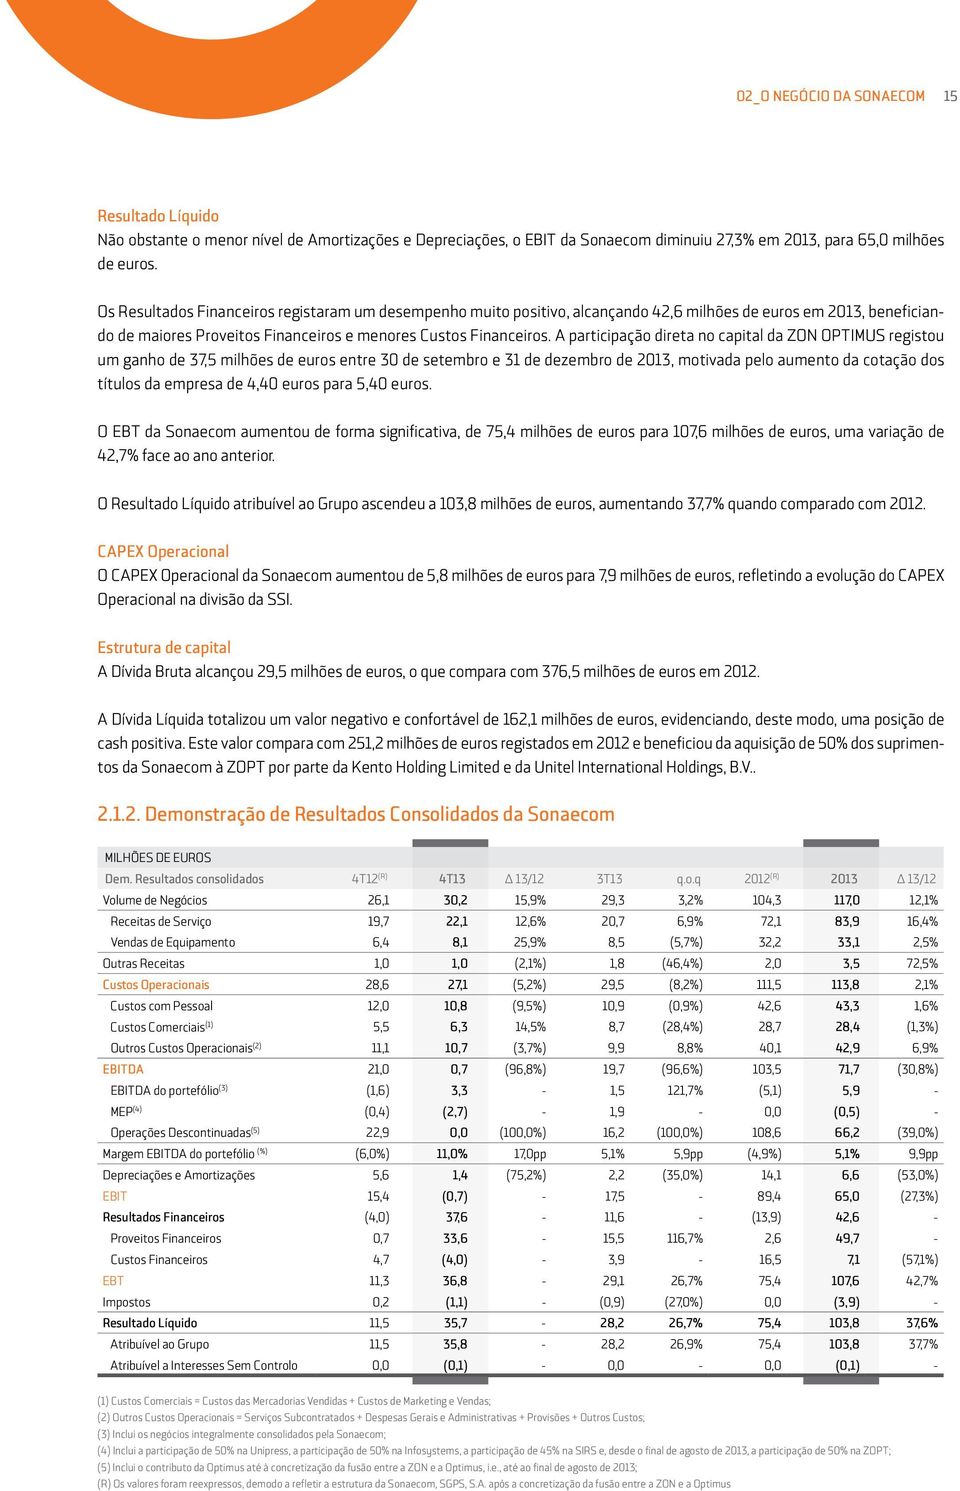 A participação direta no capital da ZON OPTIMUS registou um ganho de 37,5 milhões de euros entre 30 de setembro e 31 de dezembro de 2013, motivada pelo aumento da cotação dos títulos da empresa de